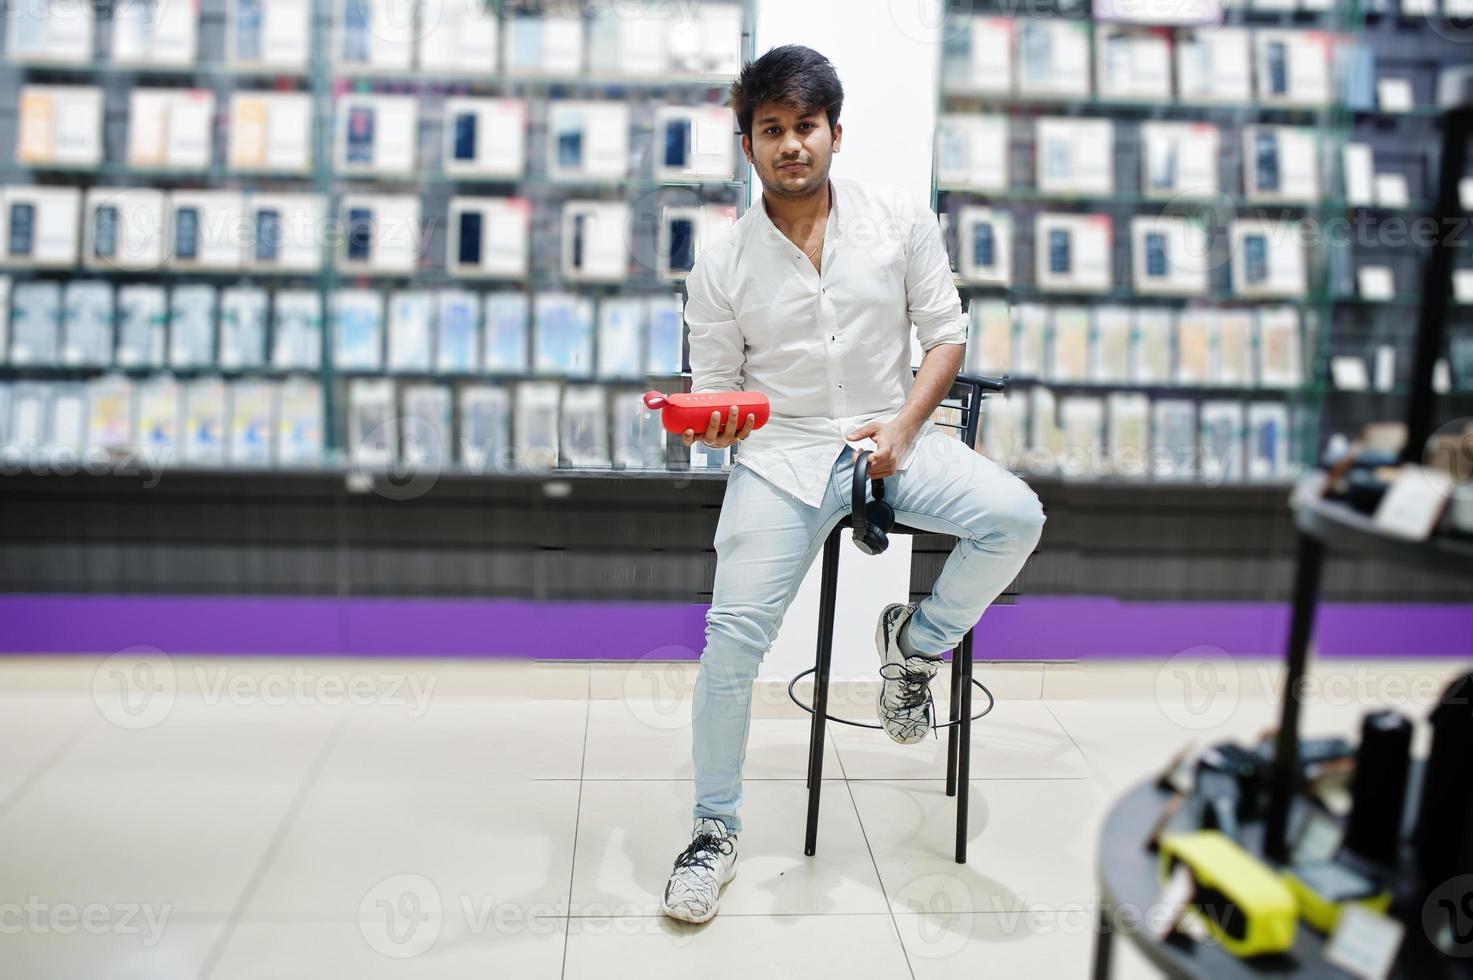 comprador de un cliente indio en una tienda de teléfonos móviles con auriculares inalámbricos y altavoz sentado en una silla. concepto de pueblos y tecnologías del sur de Asia. tienda de celulares foto